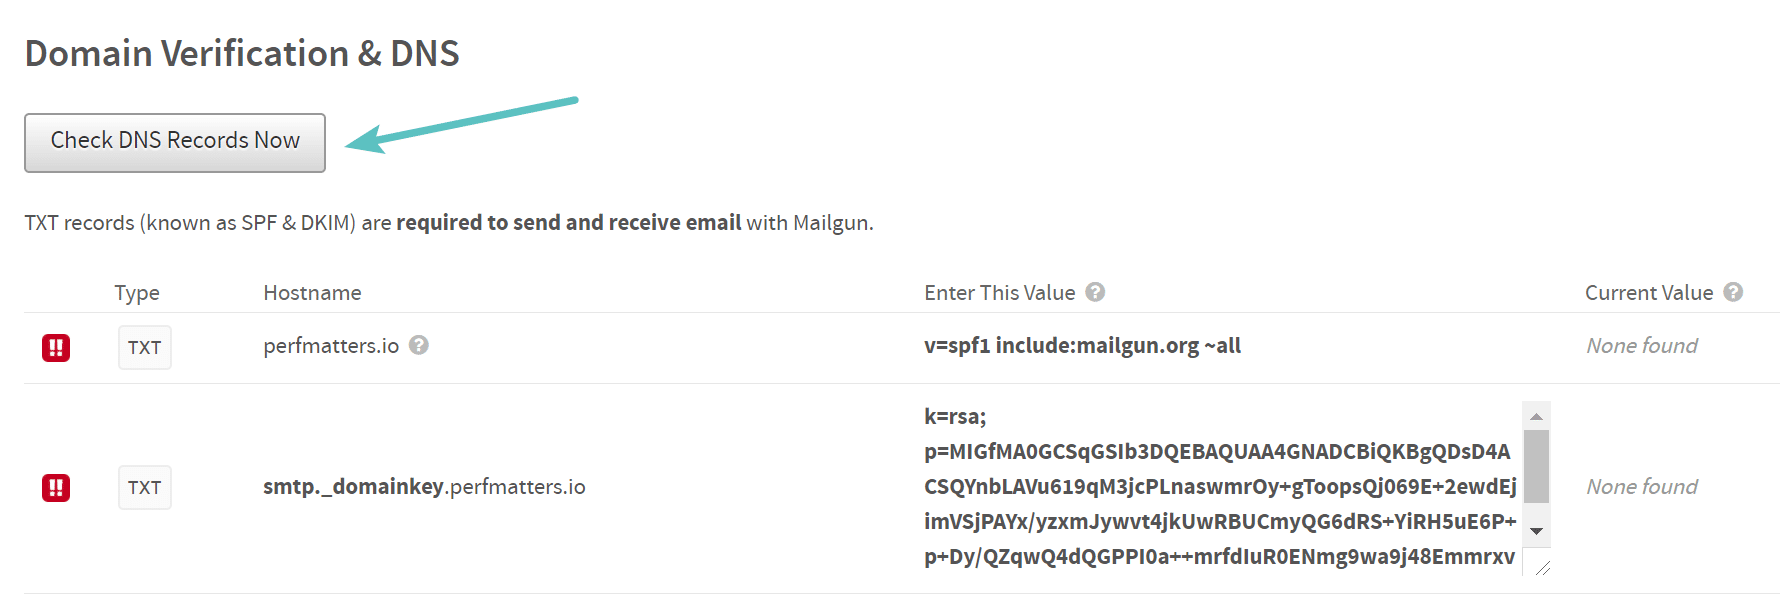 Überprüfe die DNS-Einträge jetzt in Mailgun